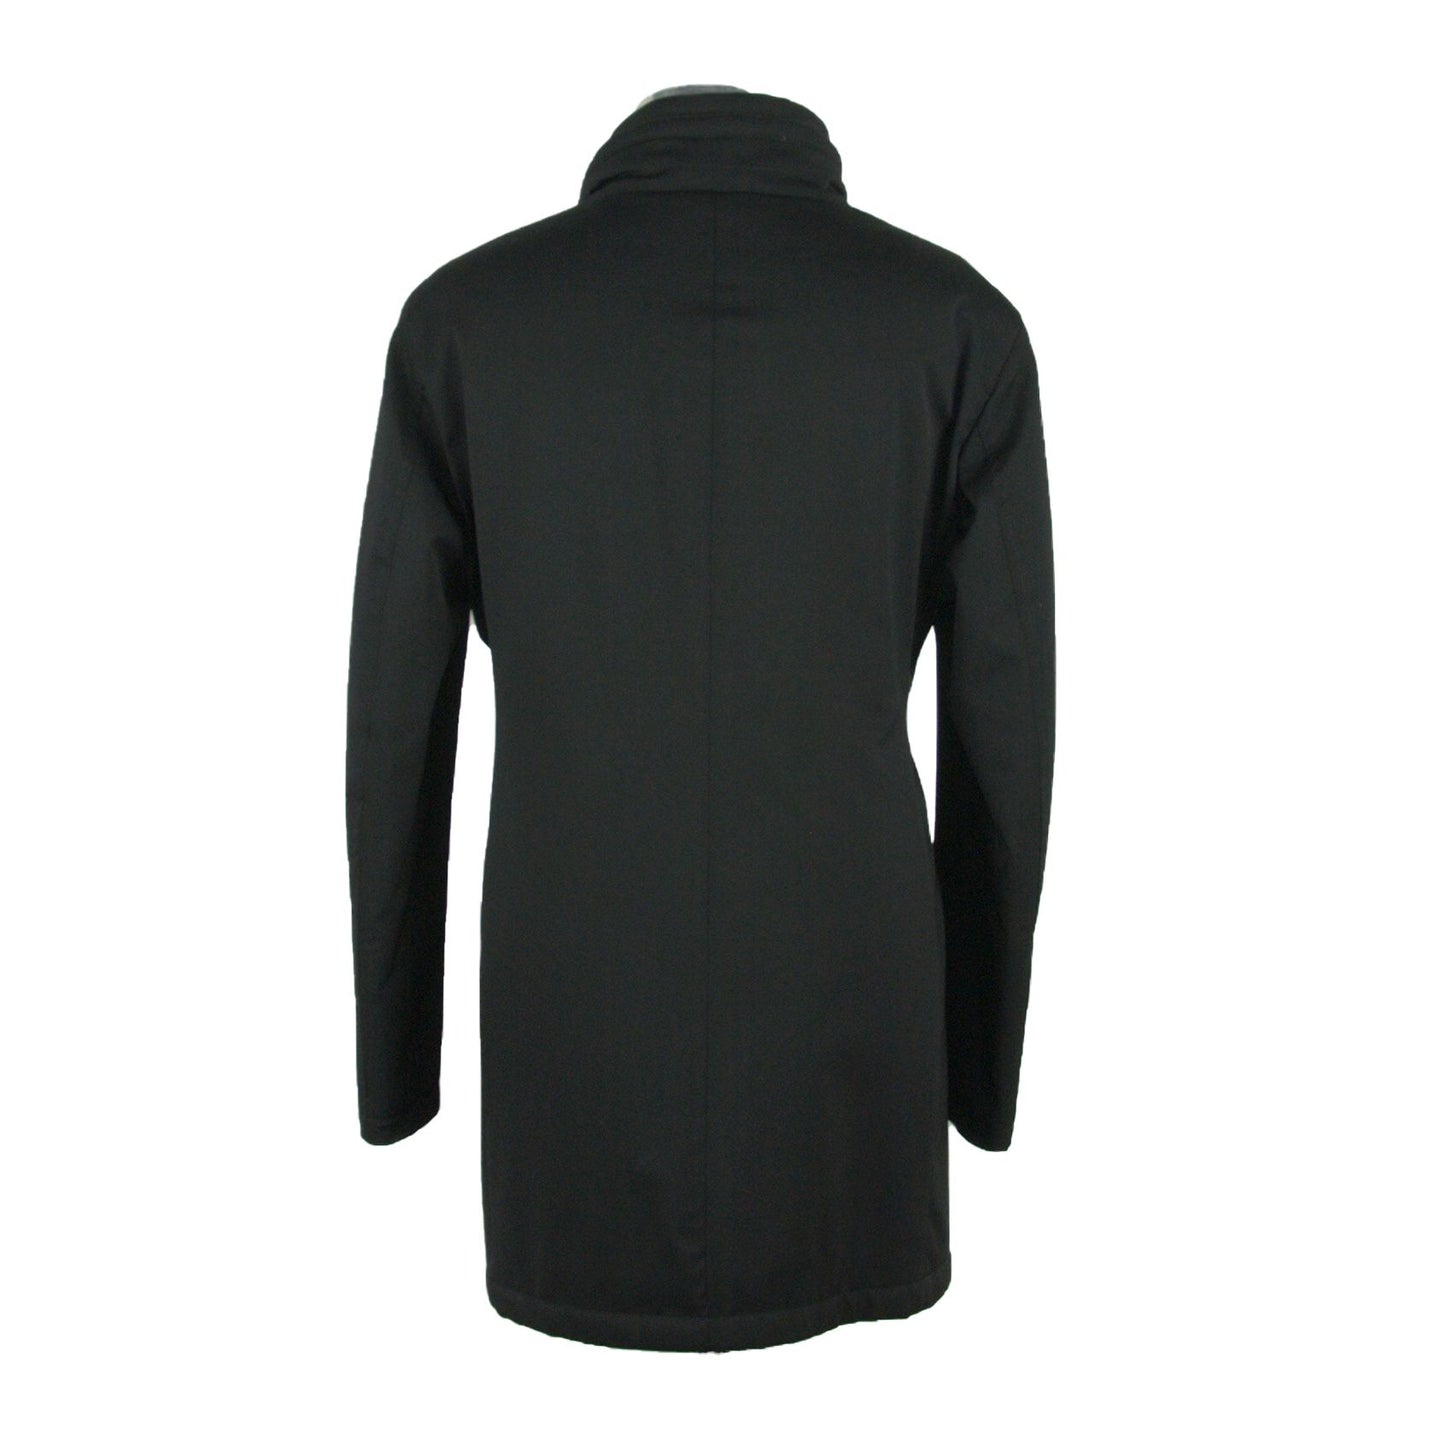 Made in Italy Elegant Black Wool-Blend Jacket